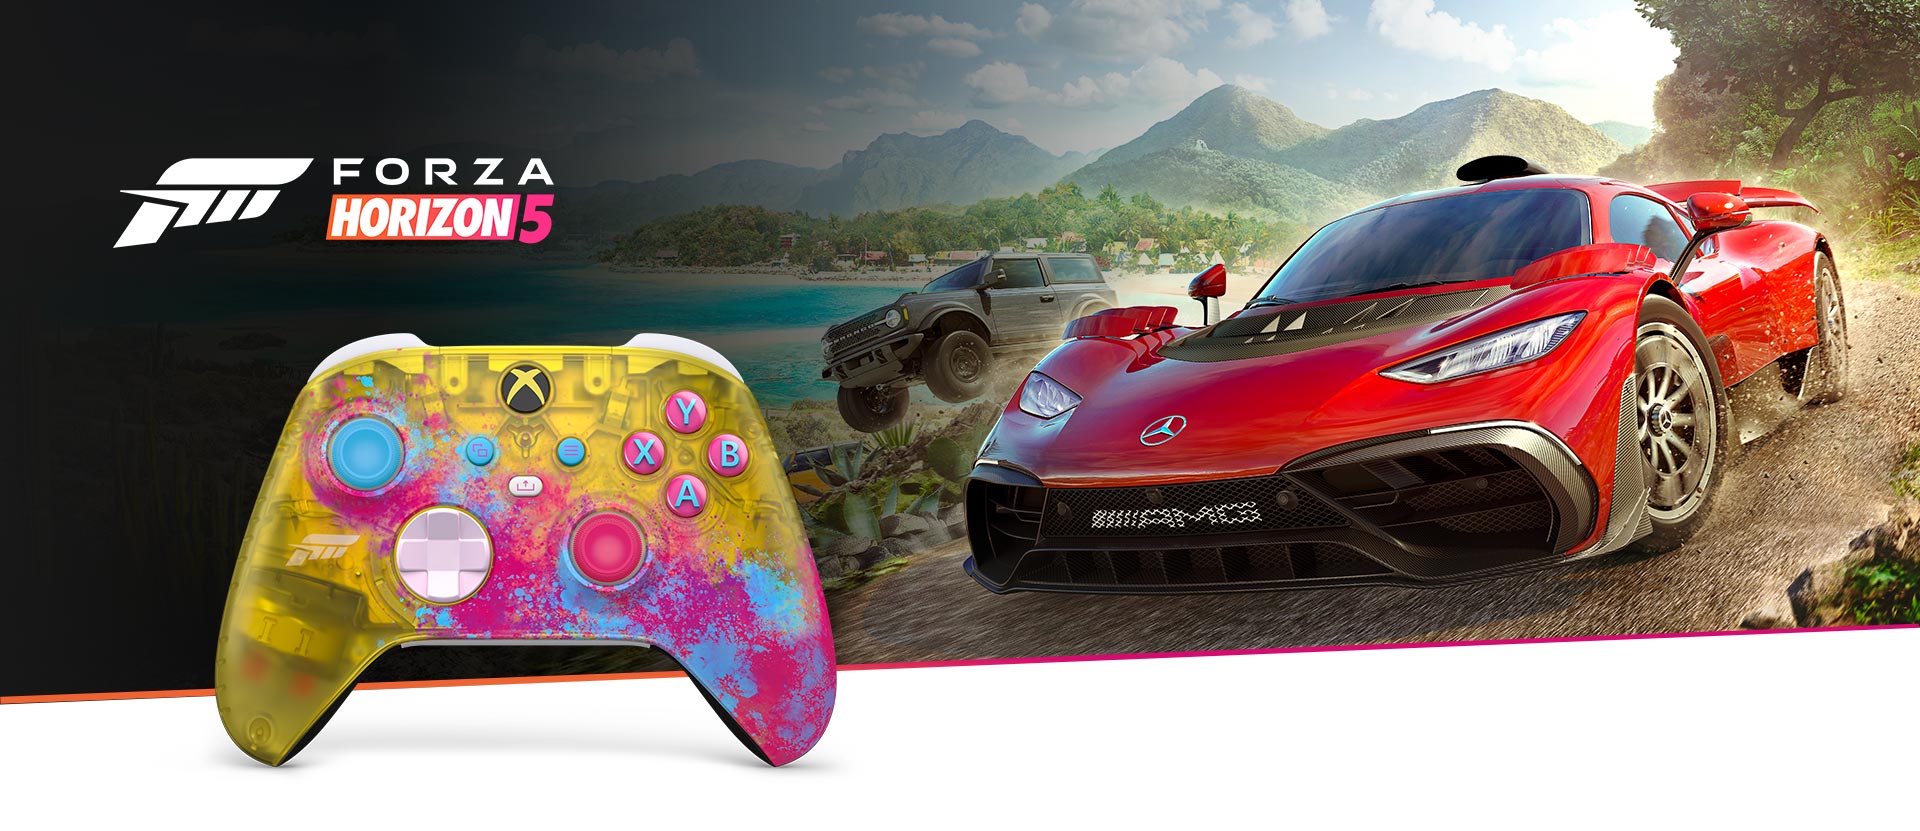  Trådløs Xbox-kontroller Forza Horizon 5 foran et nærbilde av kontrolleren